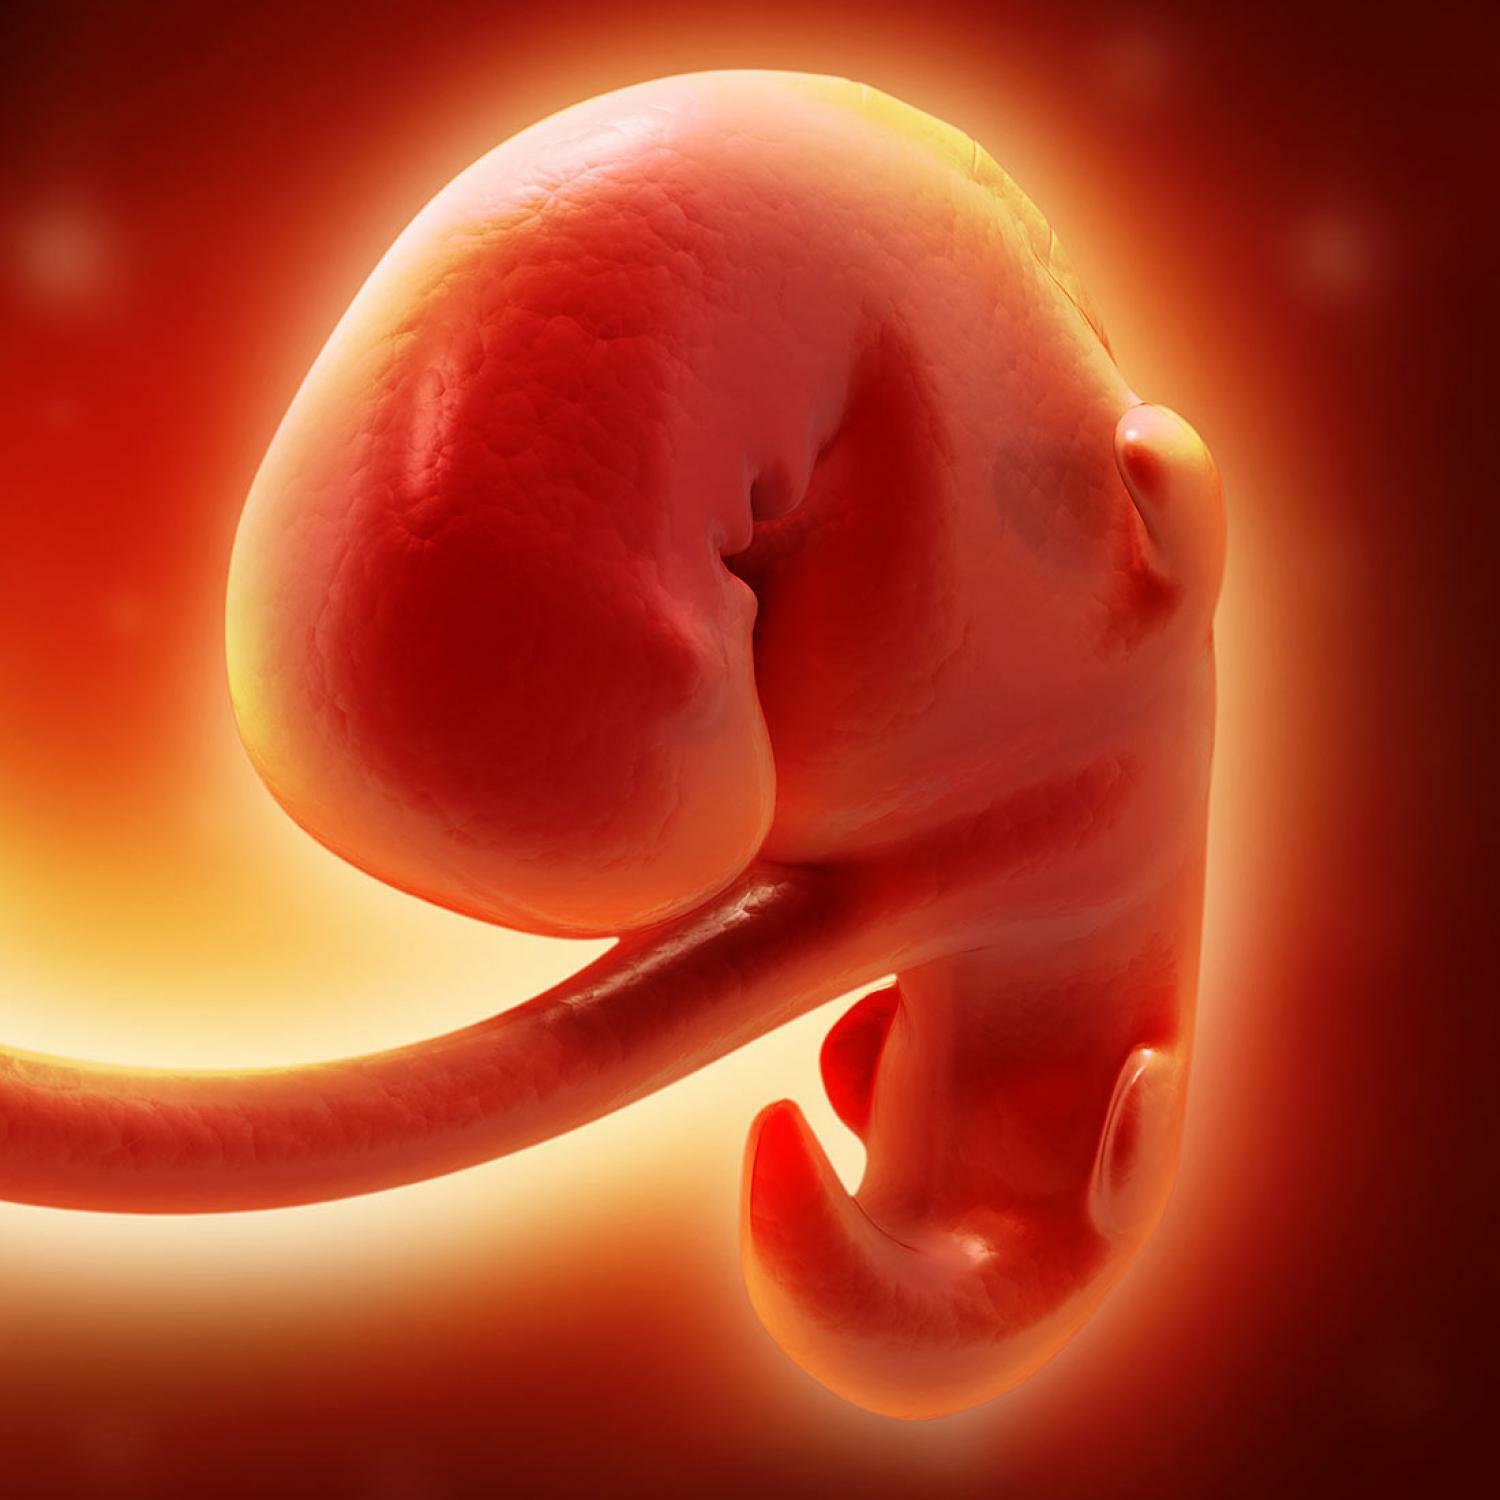 6 неделя что происходит с малышом. Плод на 4 неделе беременности. Эмбрион на 4 неделе беременности. Плод на 4-6 неделе беременности. Зародыш 3-4 недели беременности.